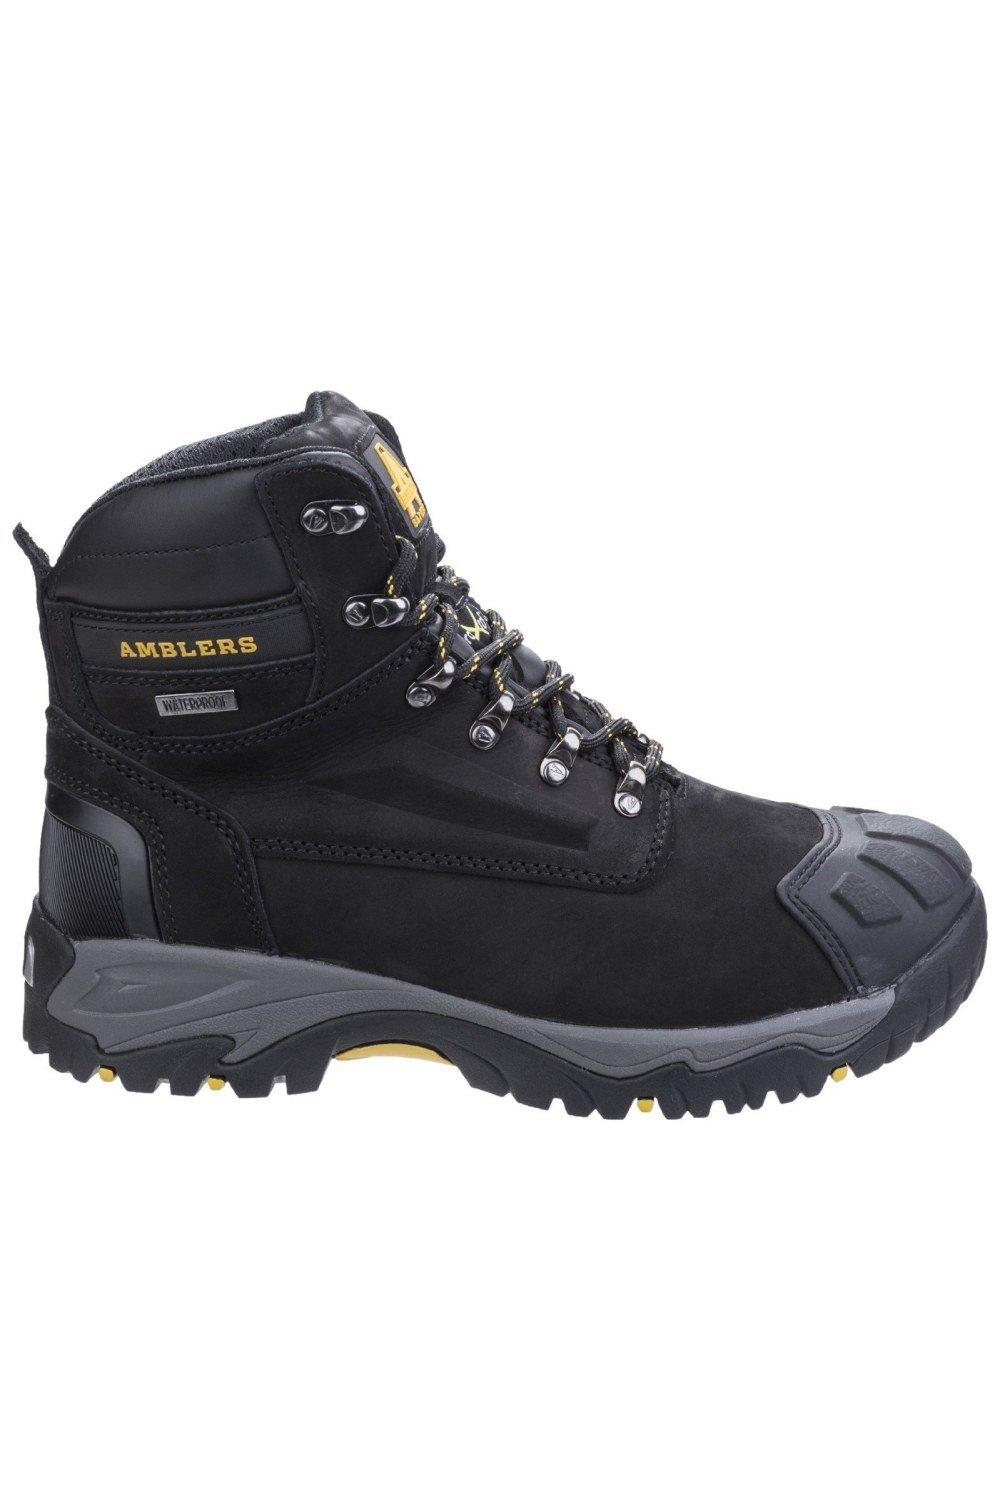 Защитные ботинки FS987 Amblers, черный